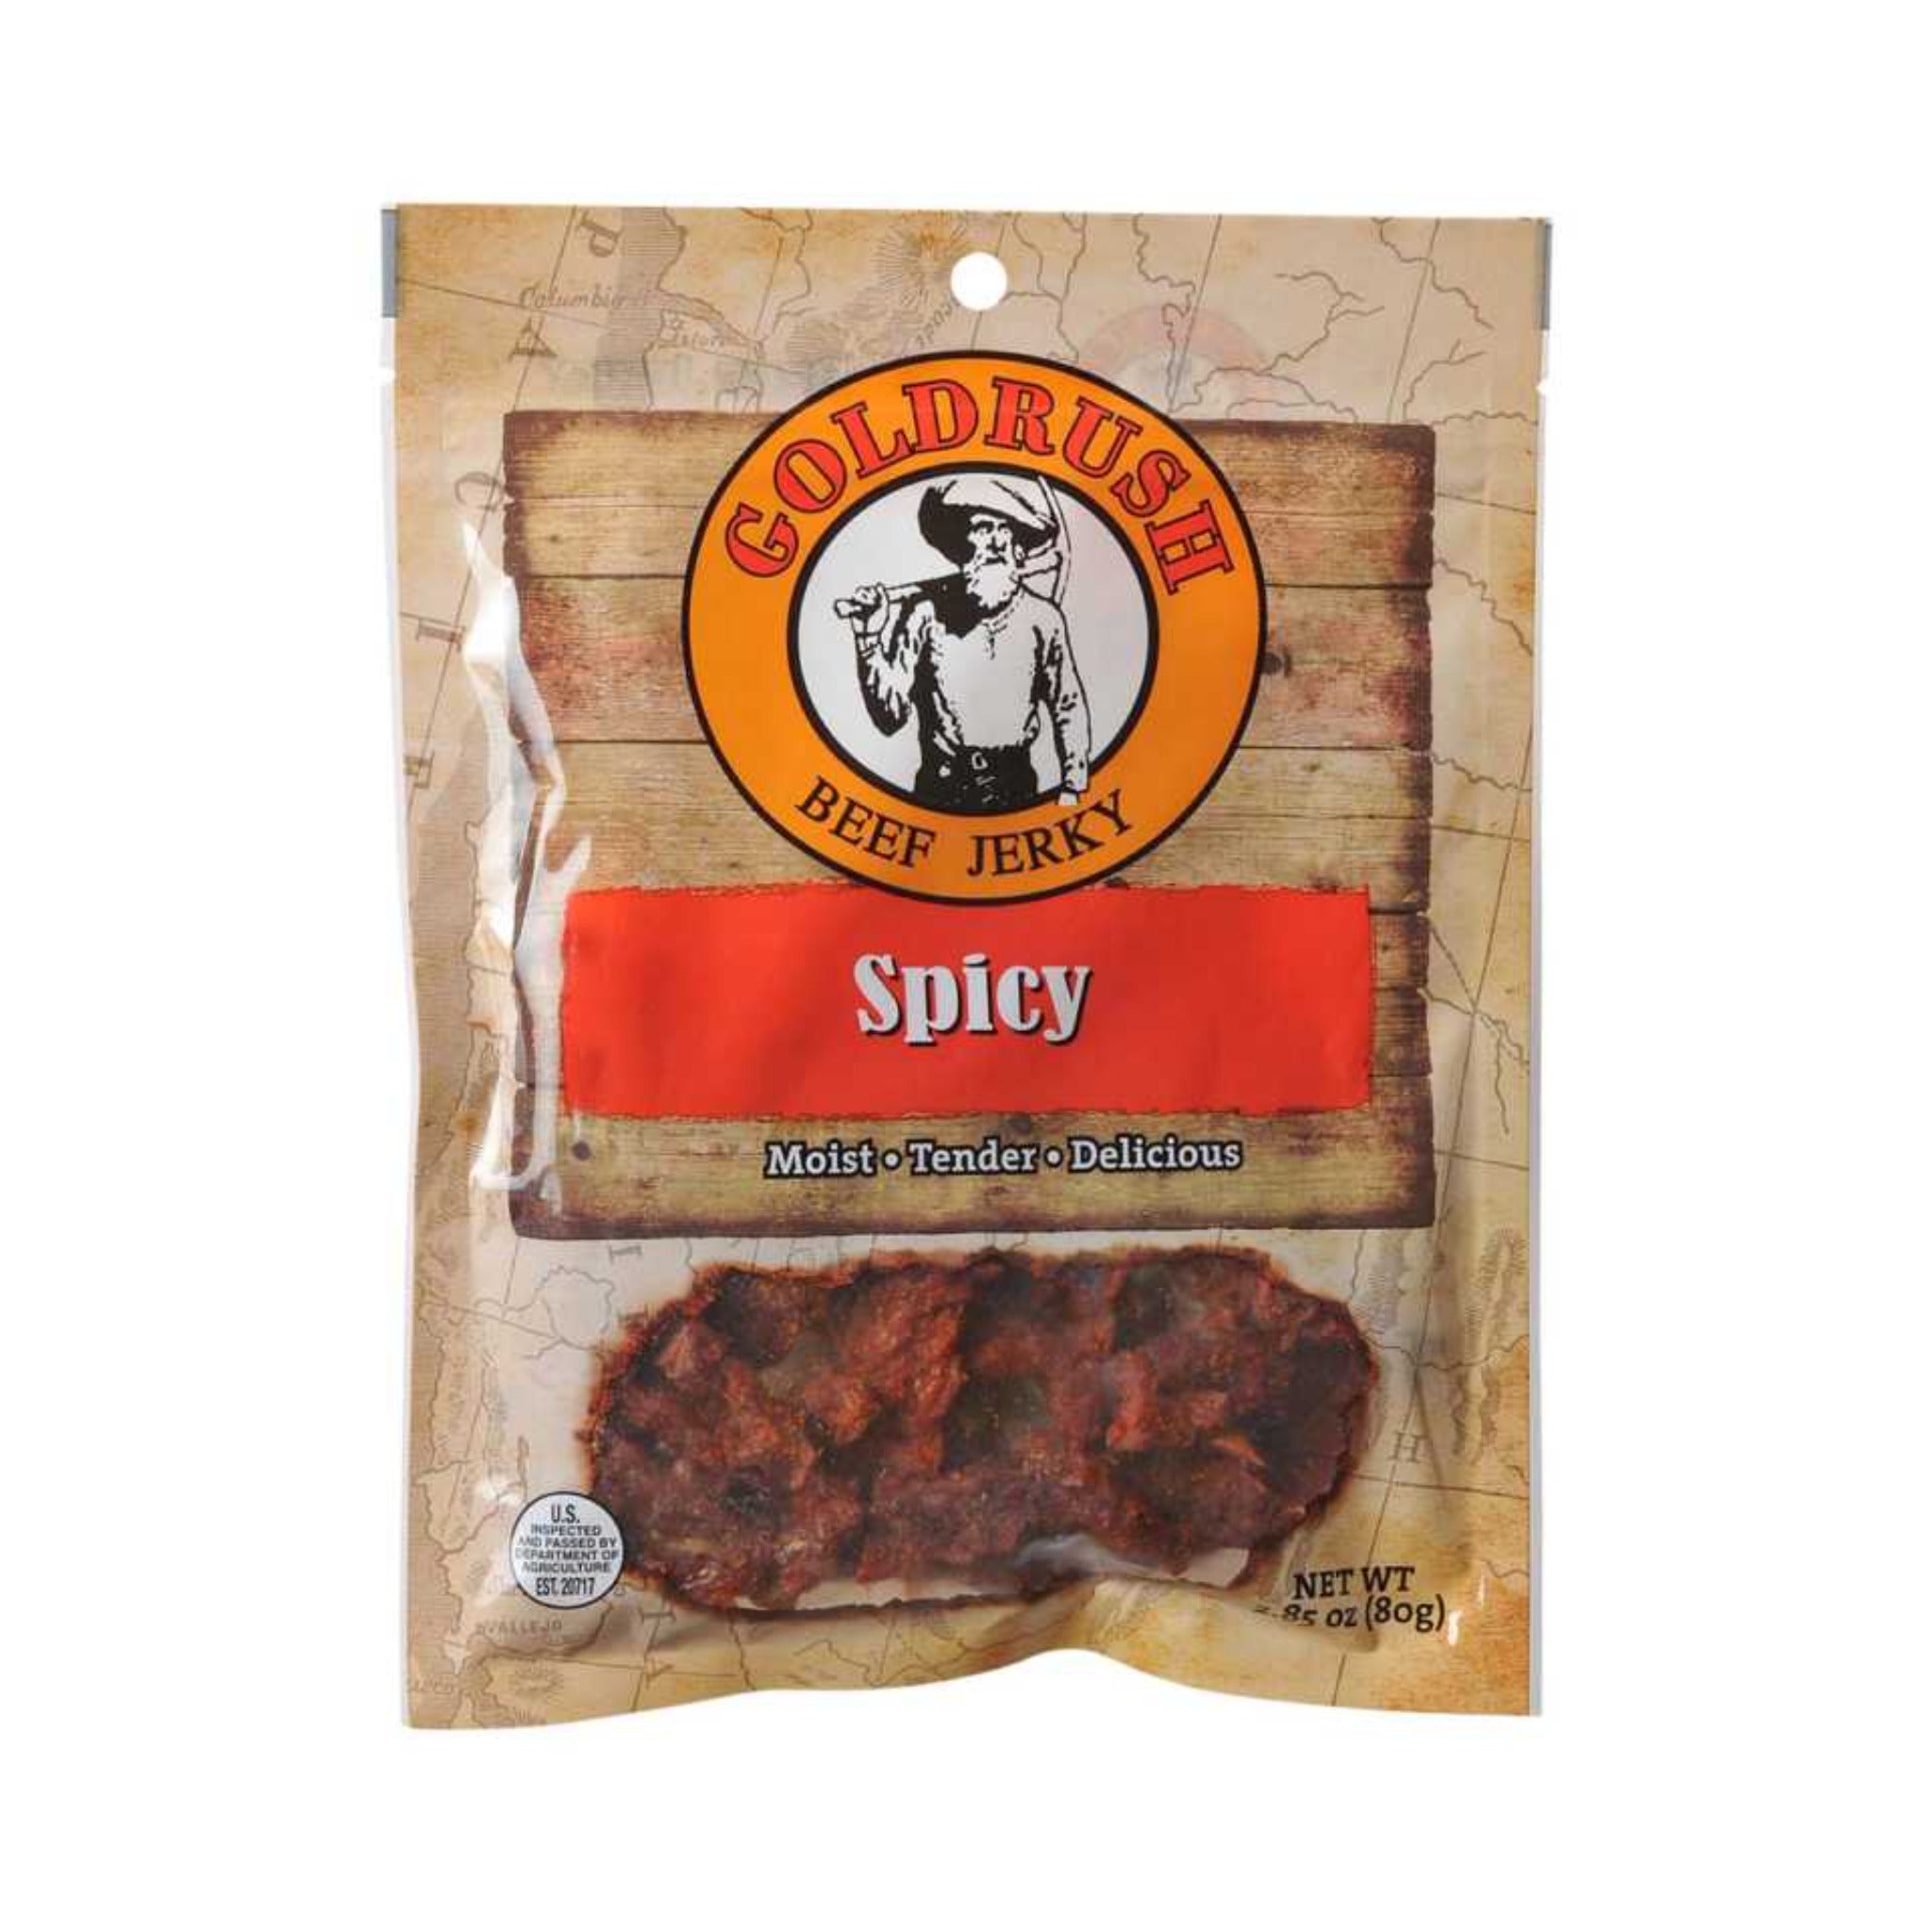 Spicy Beef Jerky